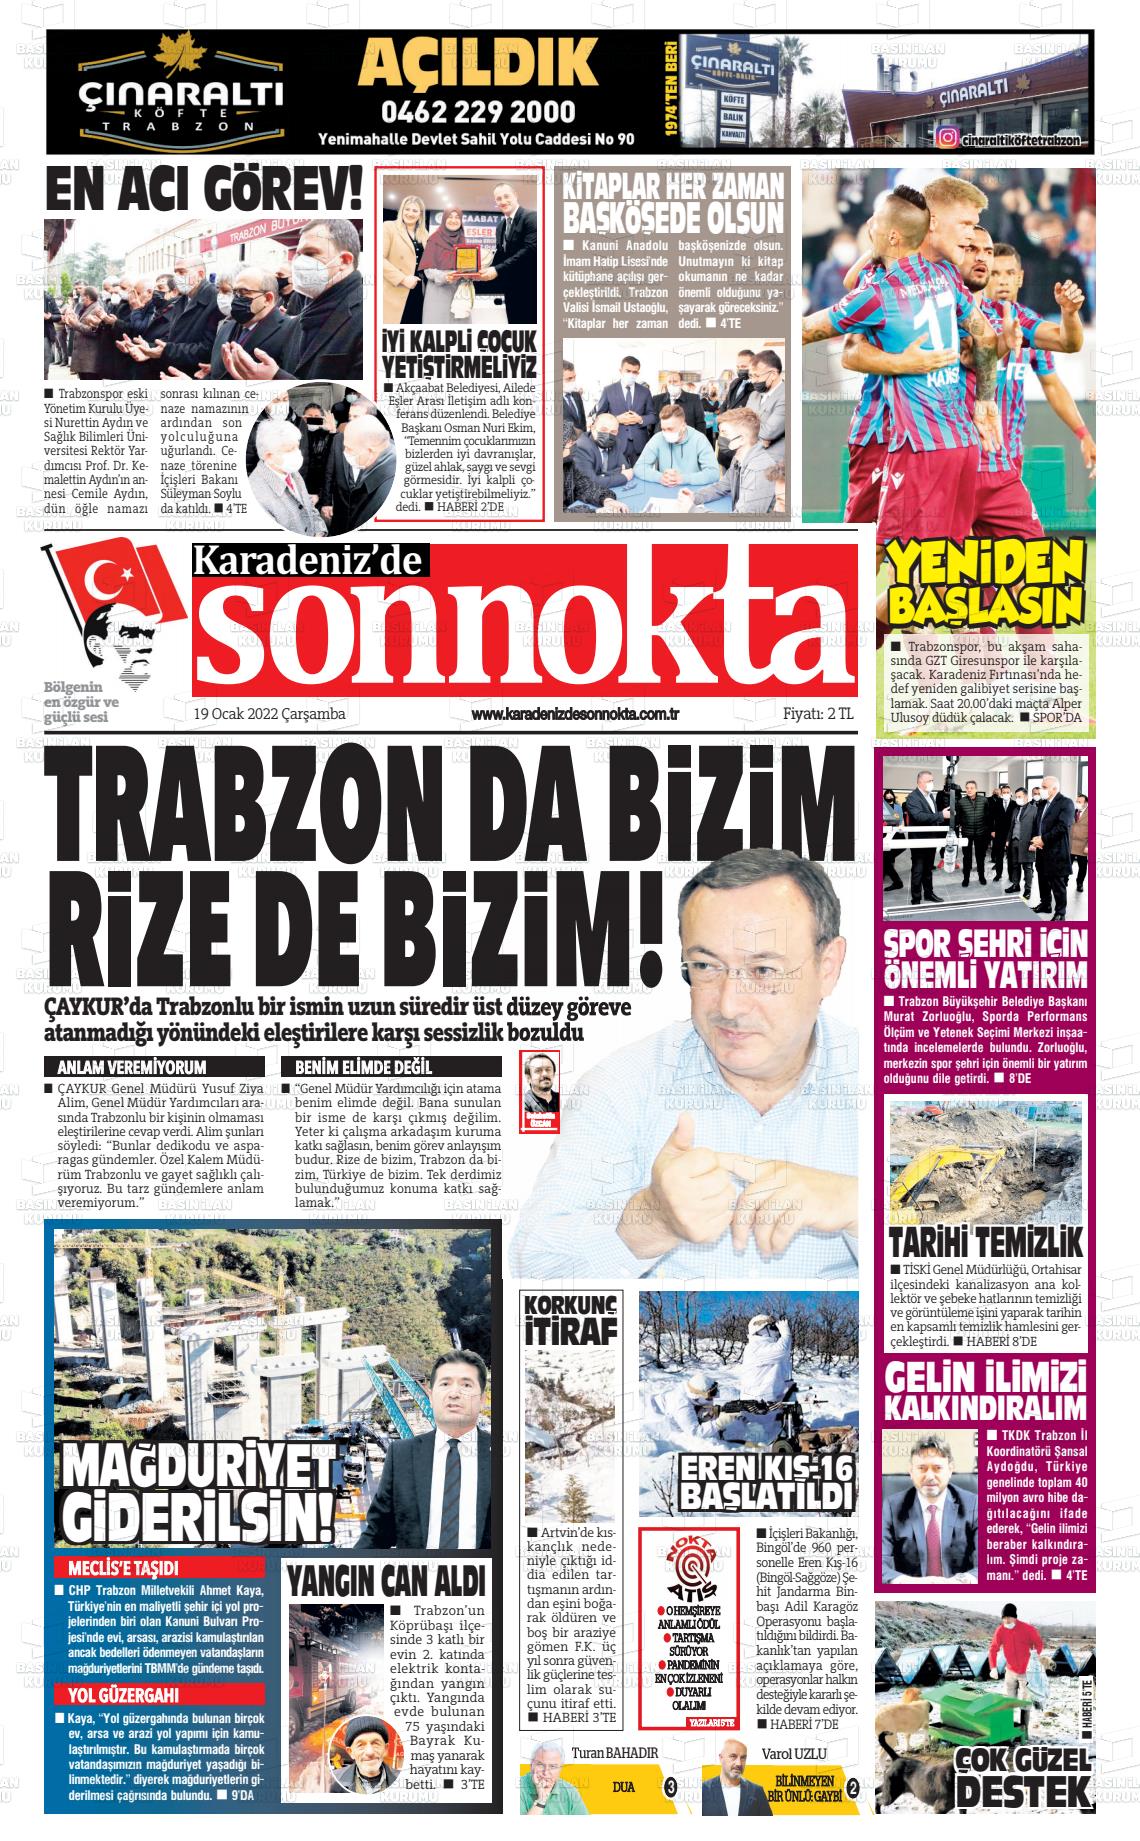 19 Ocak 2022 Karadeniz'de Sonnokta Gazete Manşeti